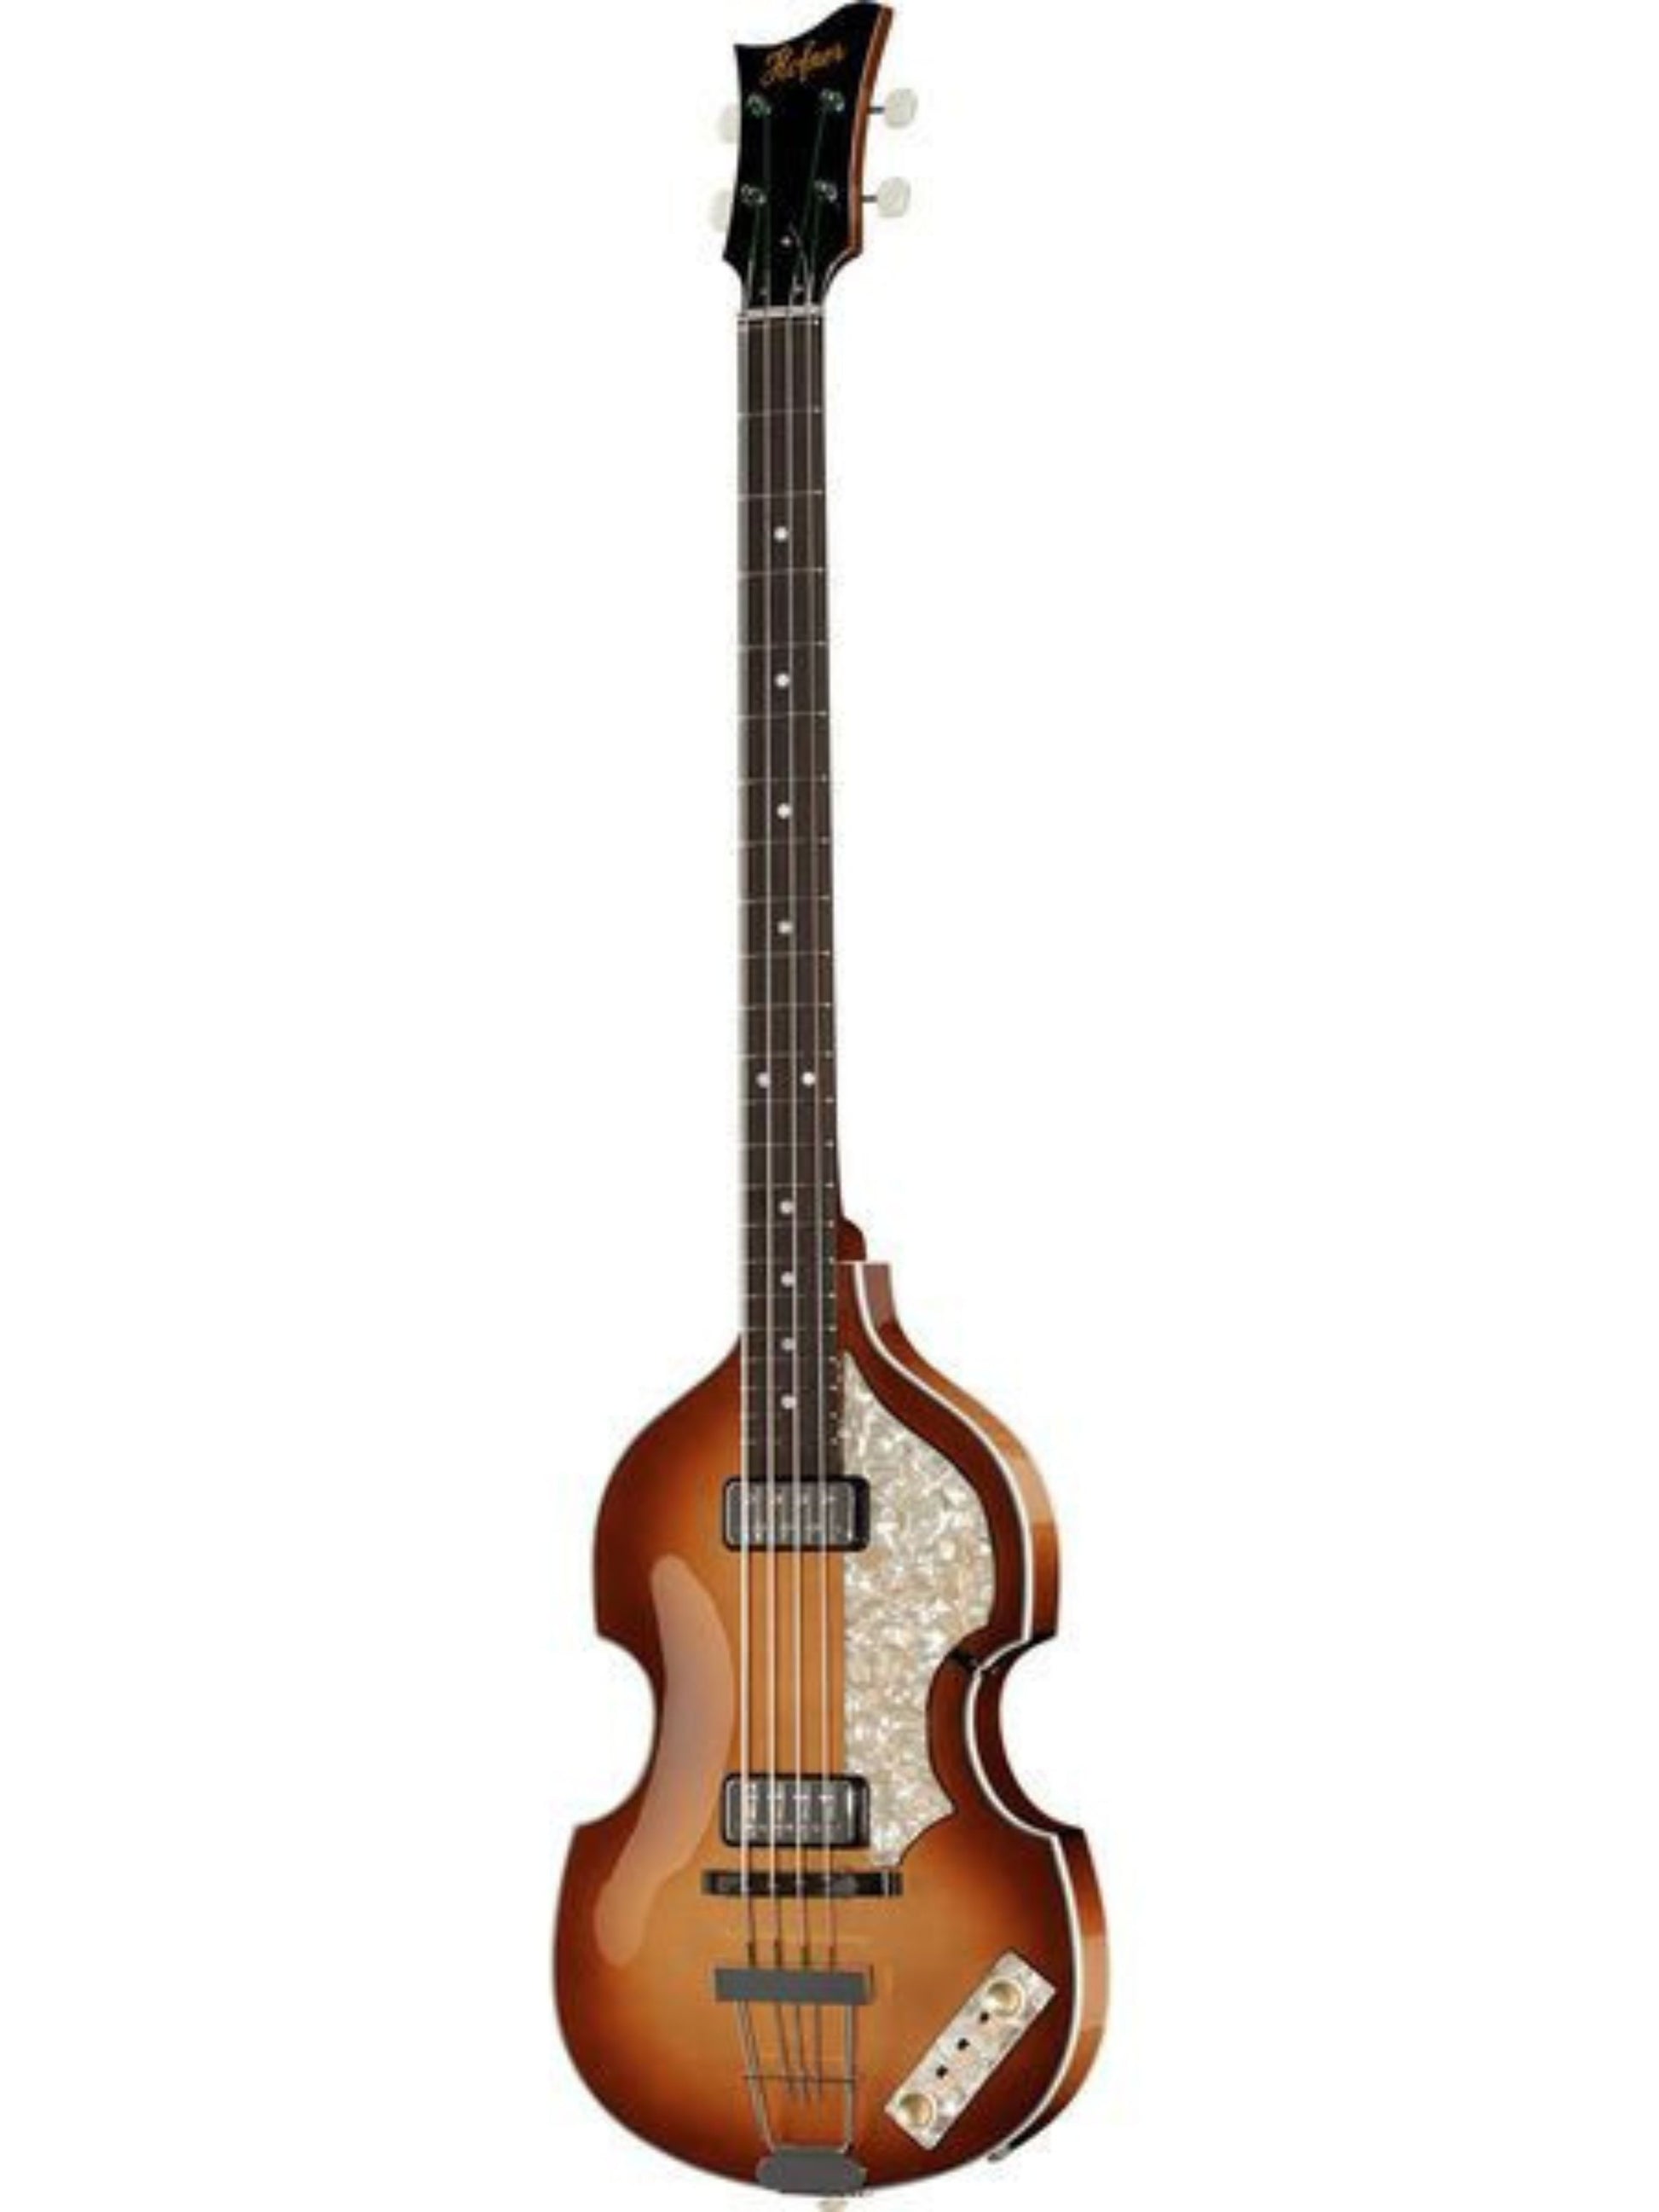 Höfner 500/I '62 Re-Issue 'Mersey' Violin Bass